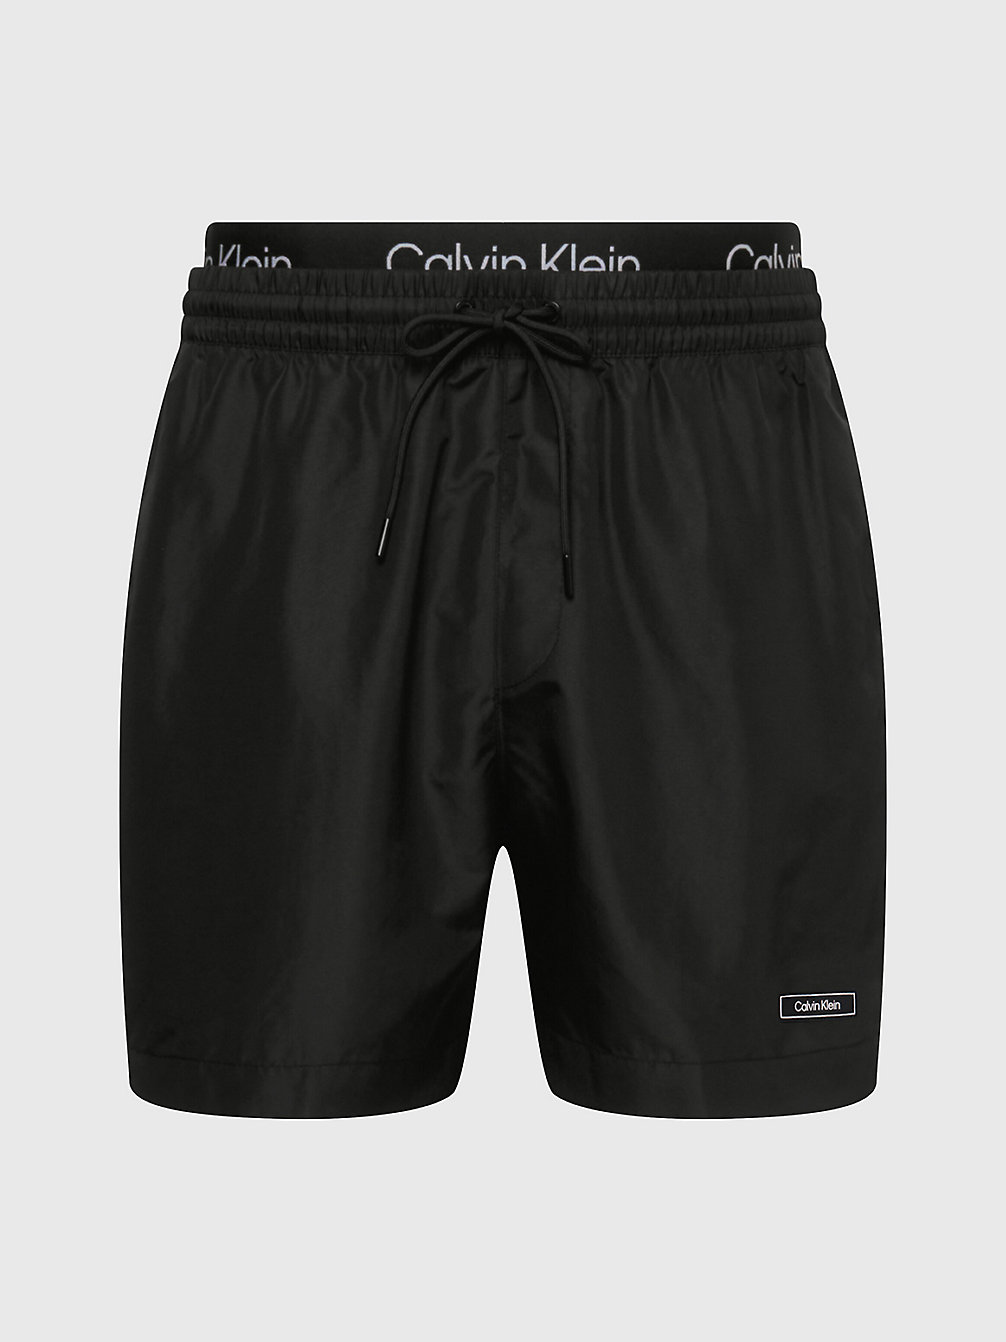 PVH BLACK Badeshorts Mit Doppeltem Bund – Core Solids undefined Herren Calvin Klein